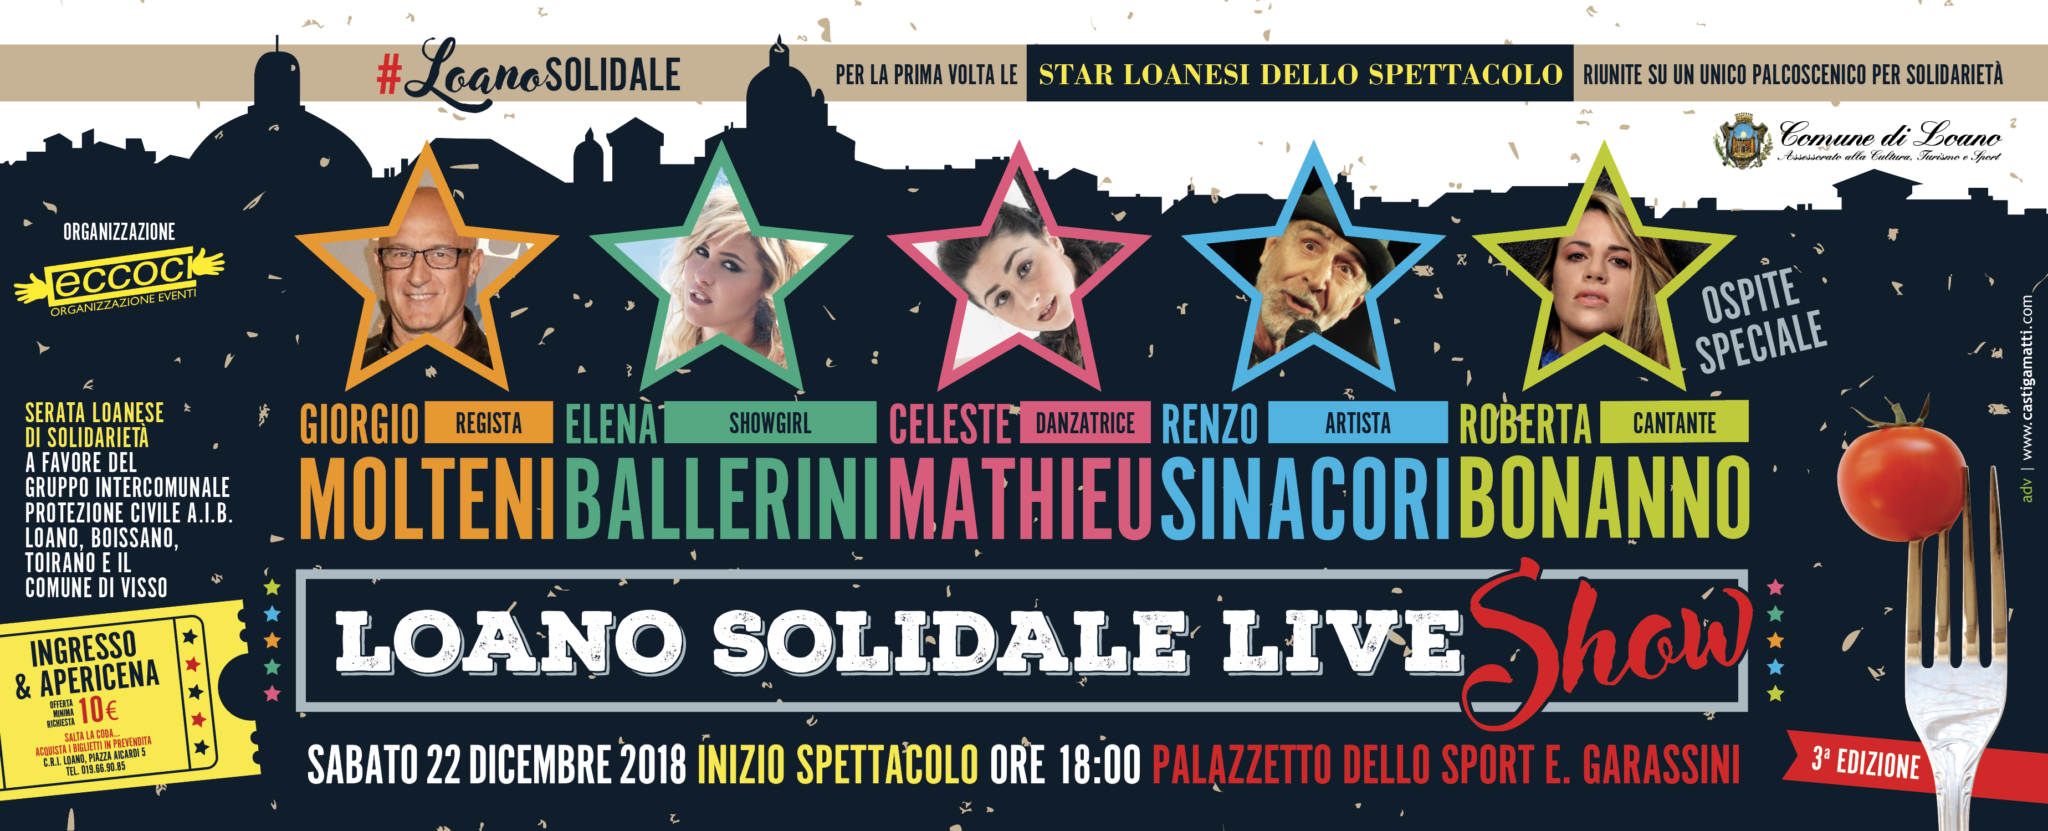 loano solidale live show banner social castigamatti (1)